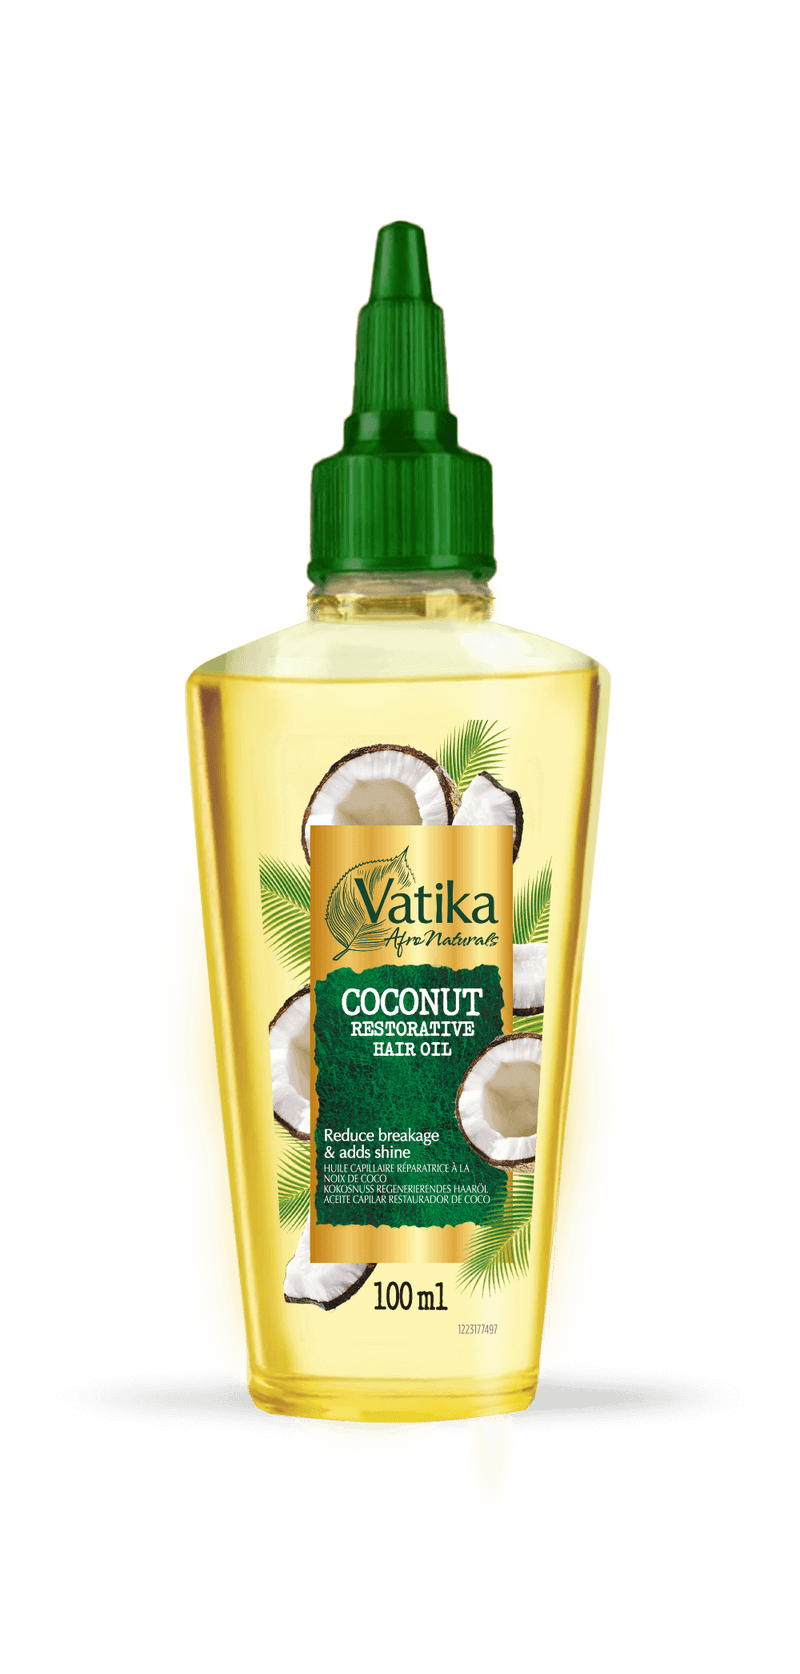 Vatika Vatika Afro Naturals Coconut Hair Oil 100ml